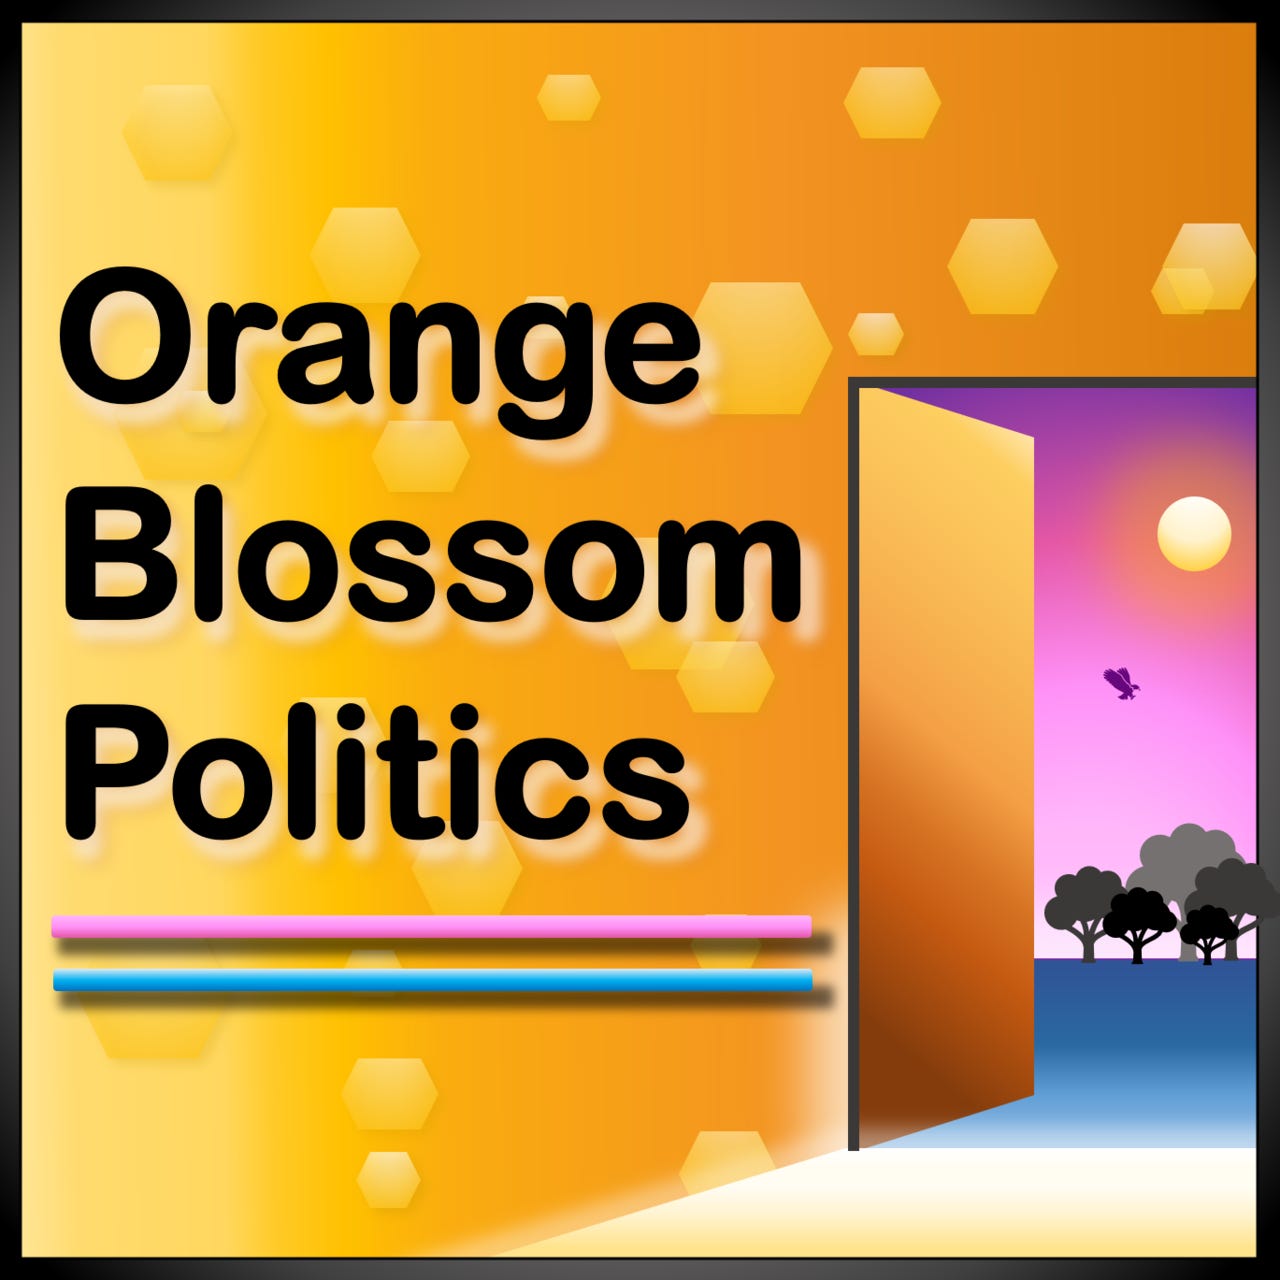 Orange Blossom Politics